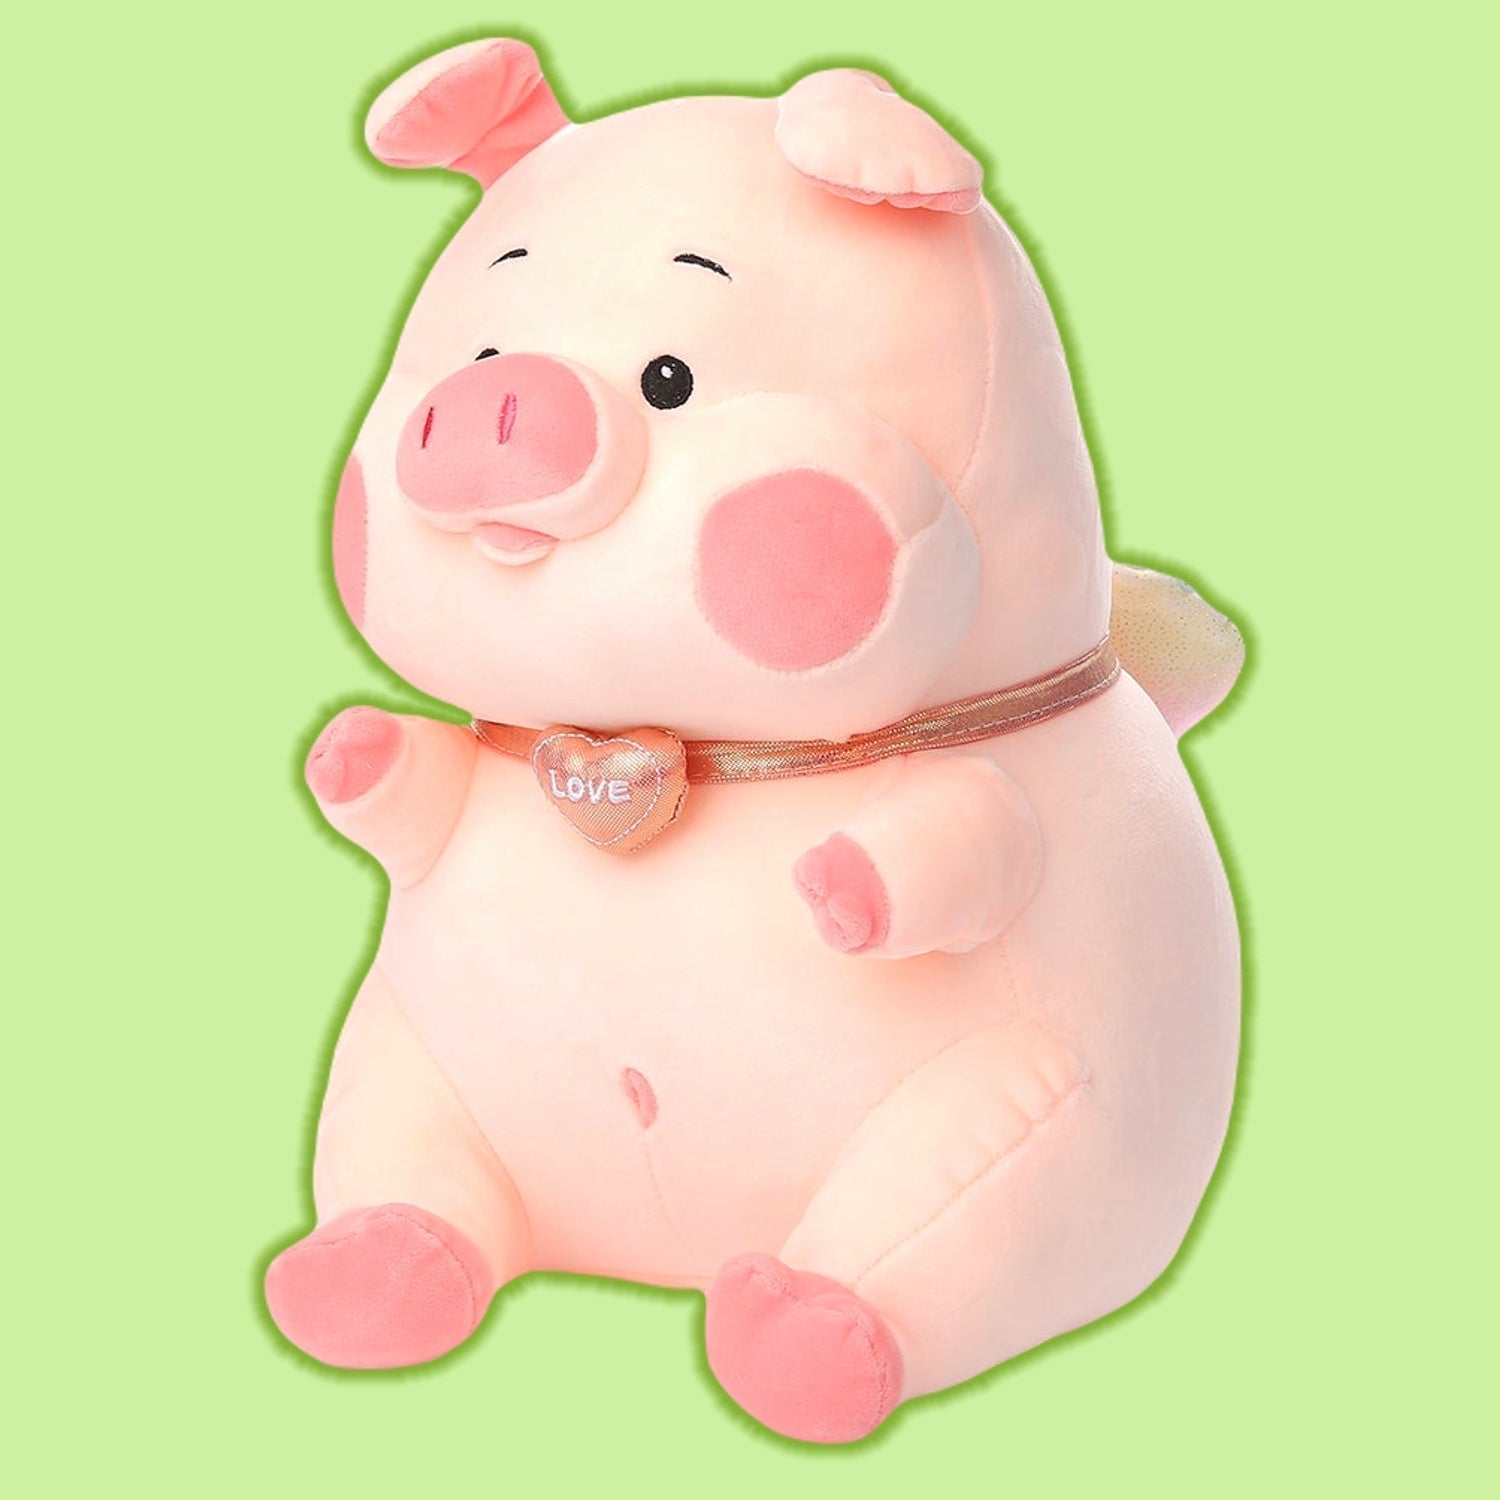 Jumbo Pink Pig Plush Toy